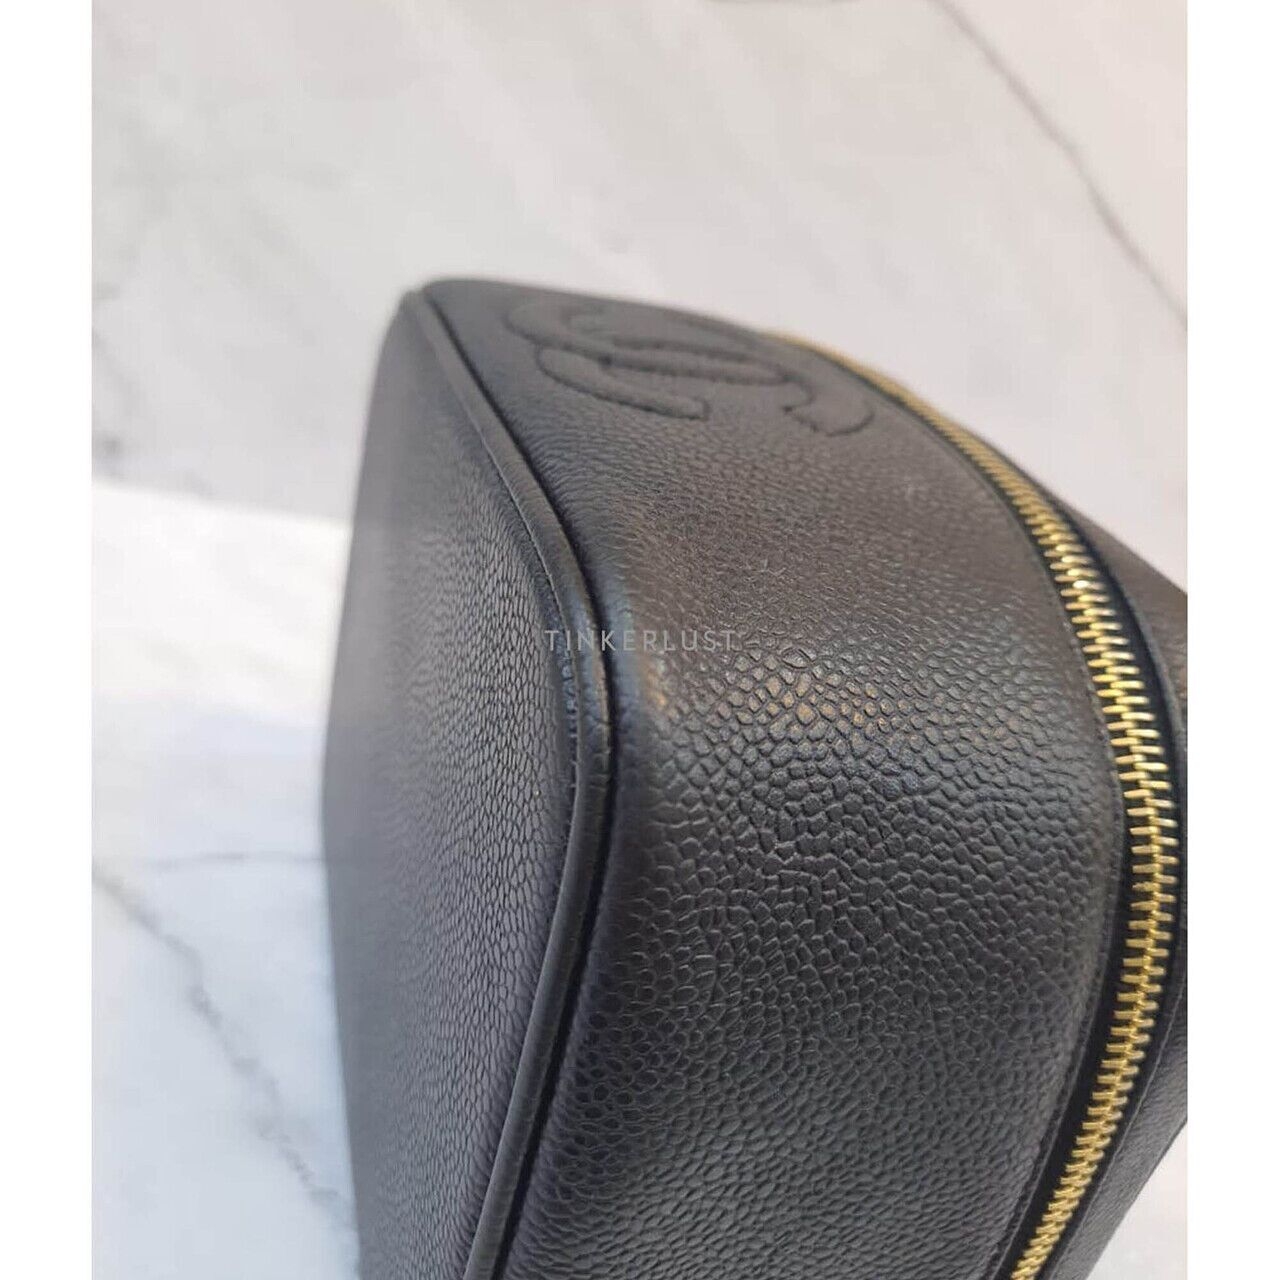 Chanel Vanity Case Black Caviar #3 GHW Handbag